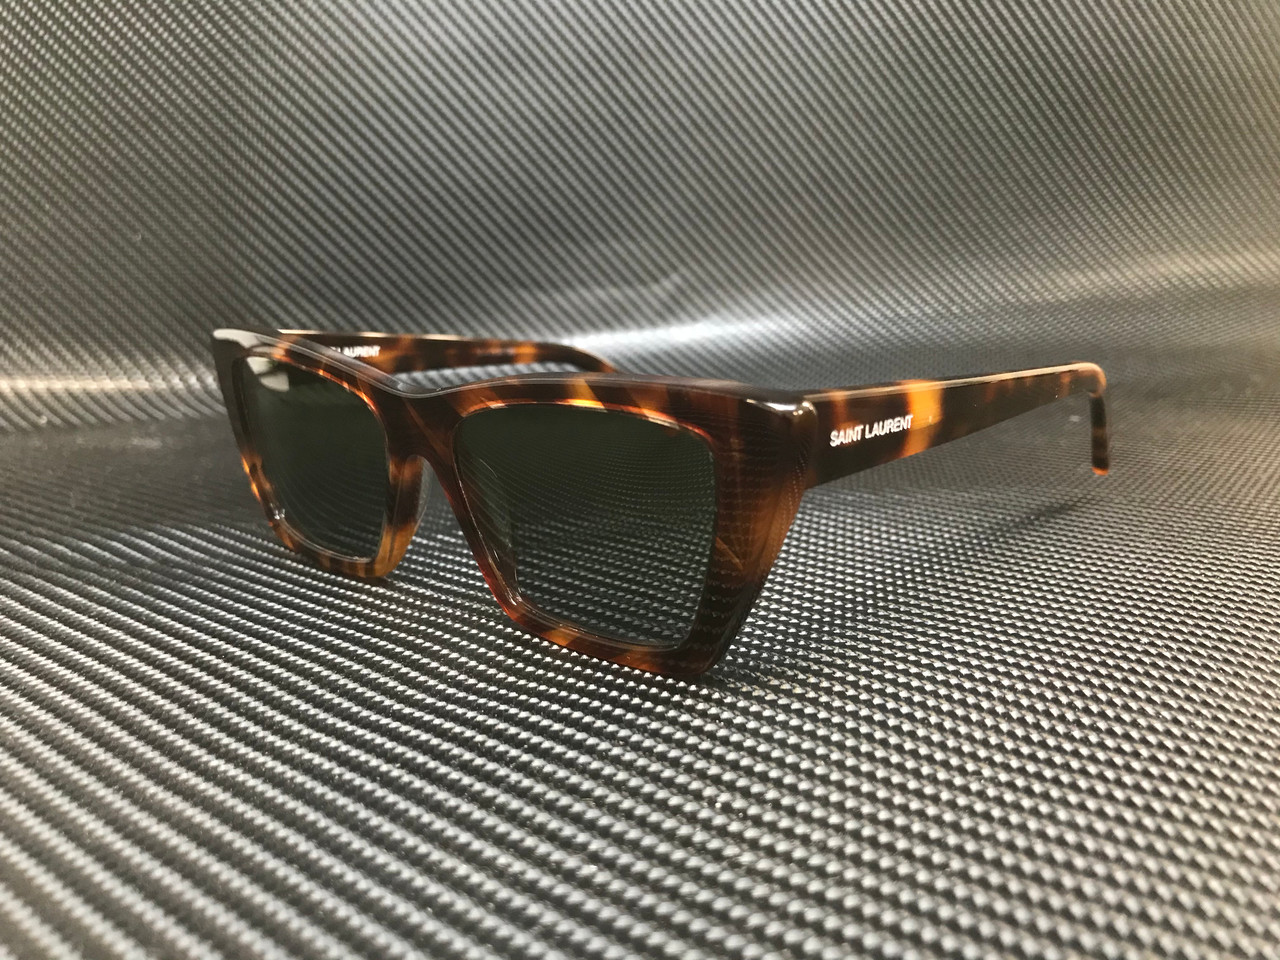 Cateye double frame sunglasses in acetate and metal Dark Havana - LOEWE